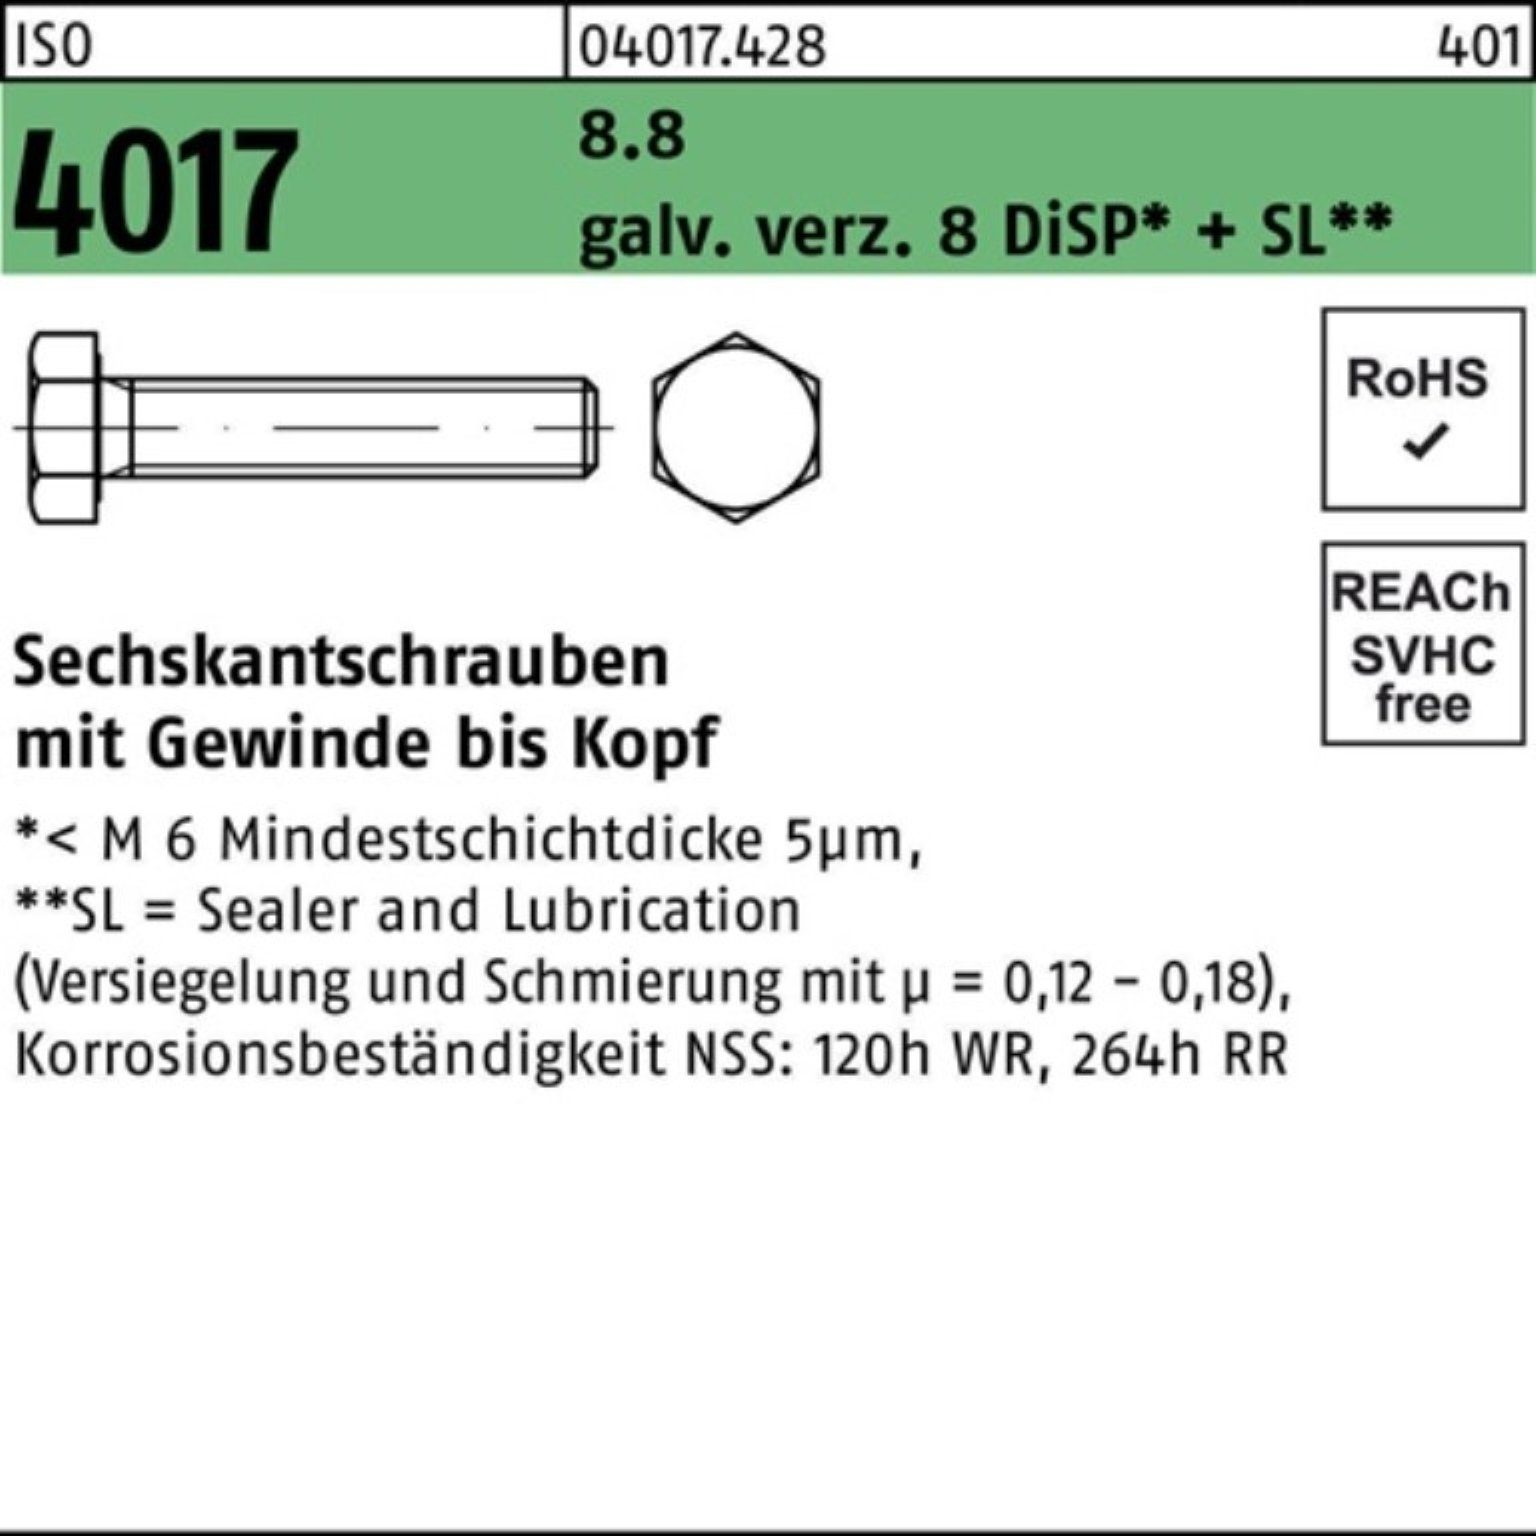 M5x 500er ISO galv.verz. Bufab 4017 VG Sechskantschraube Pack 30 8.8 8 Sechskantschraube DiSP+